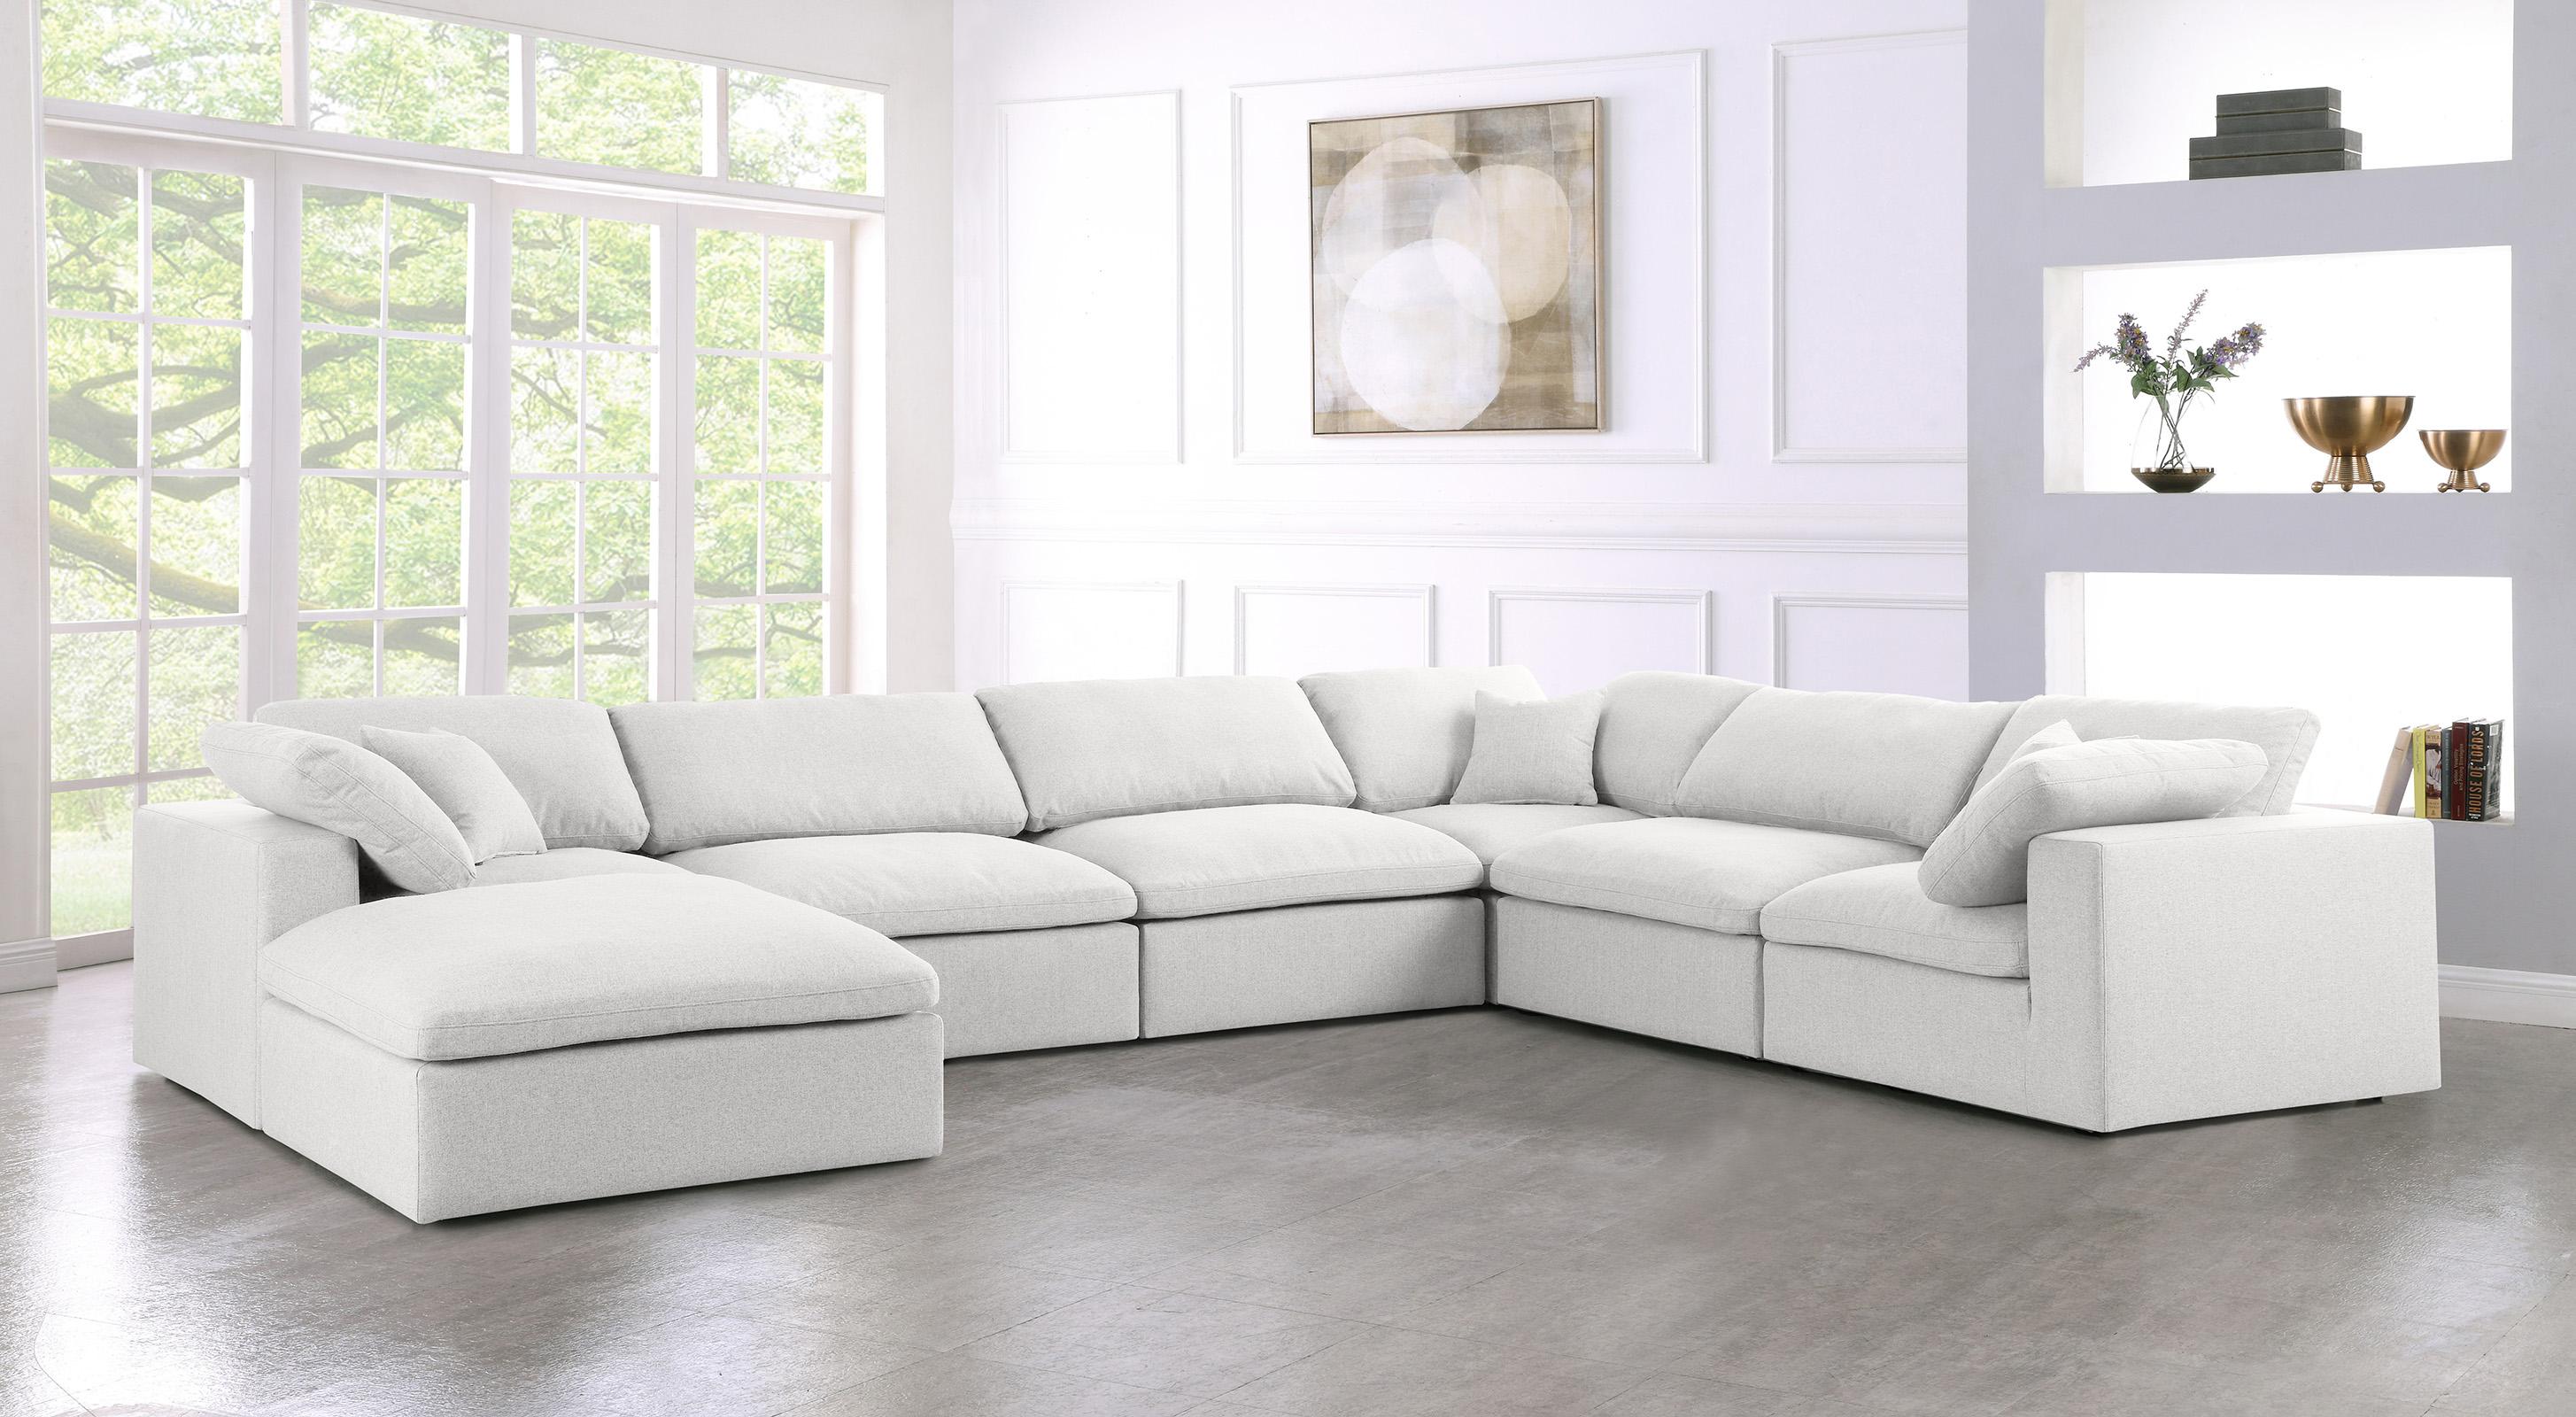 

    
Meridian Furniture SERENE 601Cream-Sec7A Modular Sectional Cream 601Cream-Sec7A
